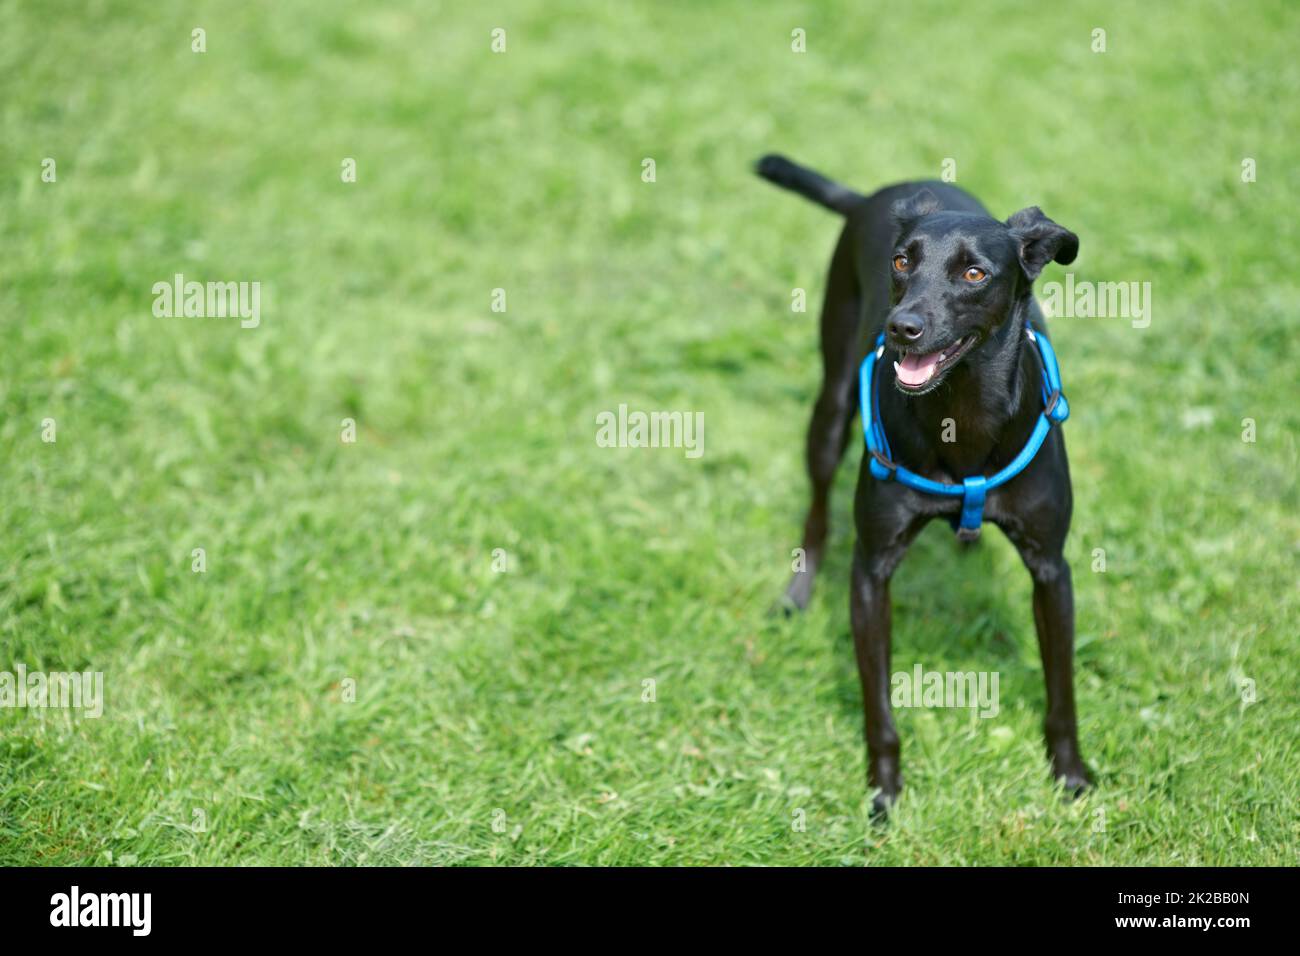 Spielen. Ein glücklicher schwarzer Hund, der auf dem Rasen steht. Stockfoto